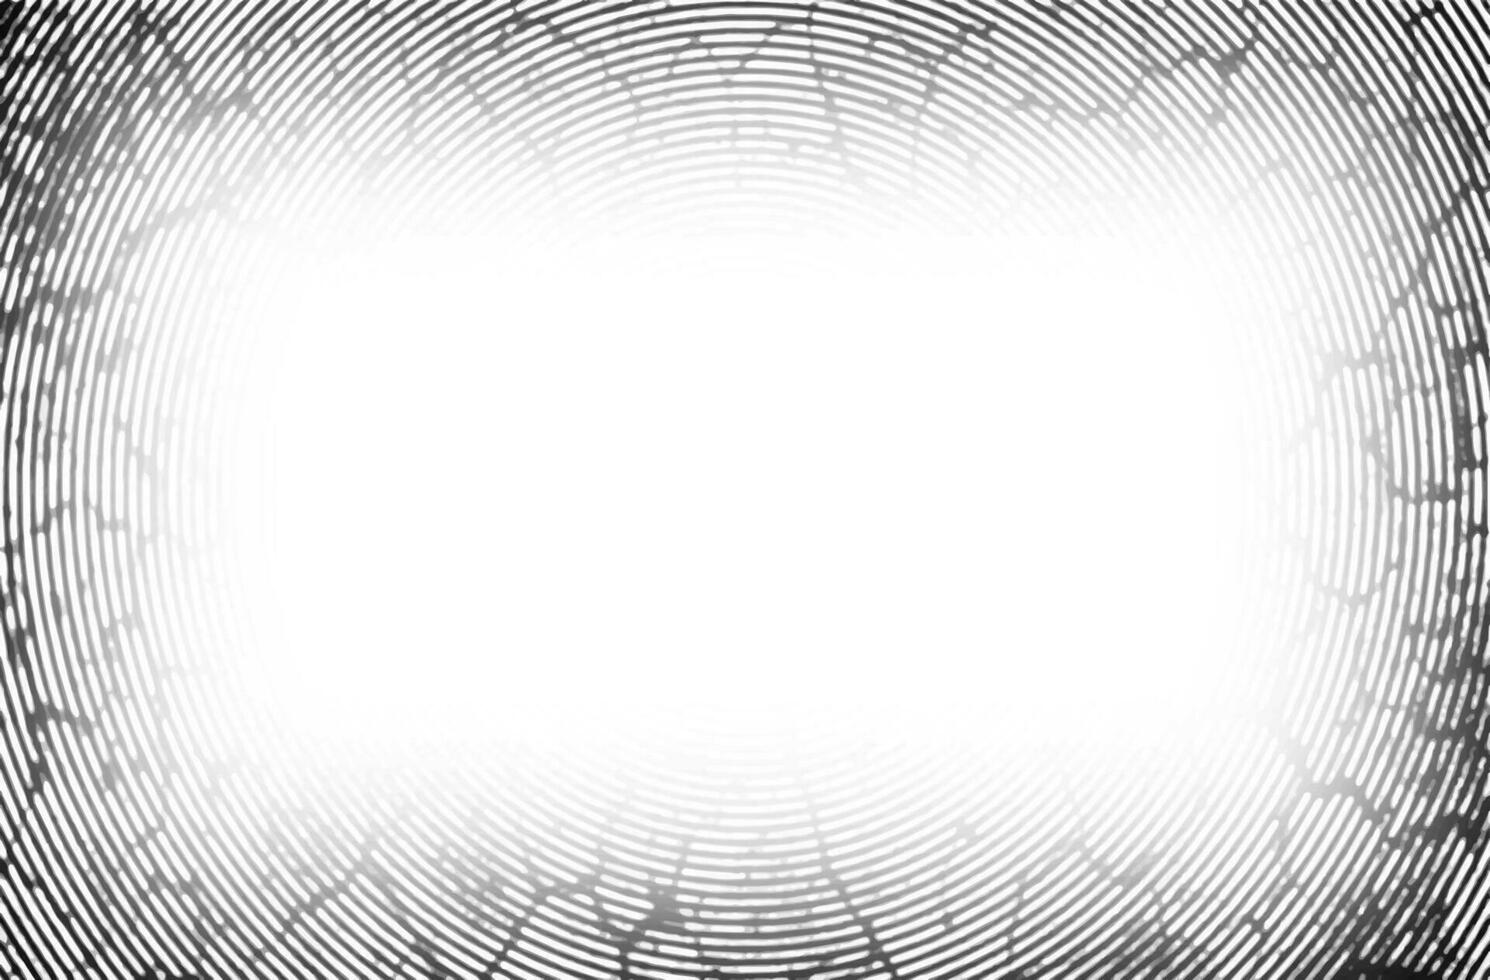 uma Preto e branco imagem do uma impressão digital grunge broca quadro, Armação vetor, gradiente bandeira círculo textura frequência, fundo bandeira abstrato quadrado padronizar círculo quadro, Armação vetor